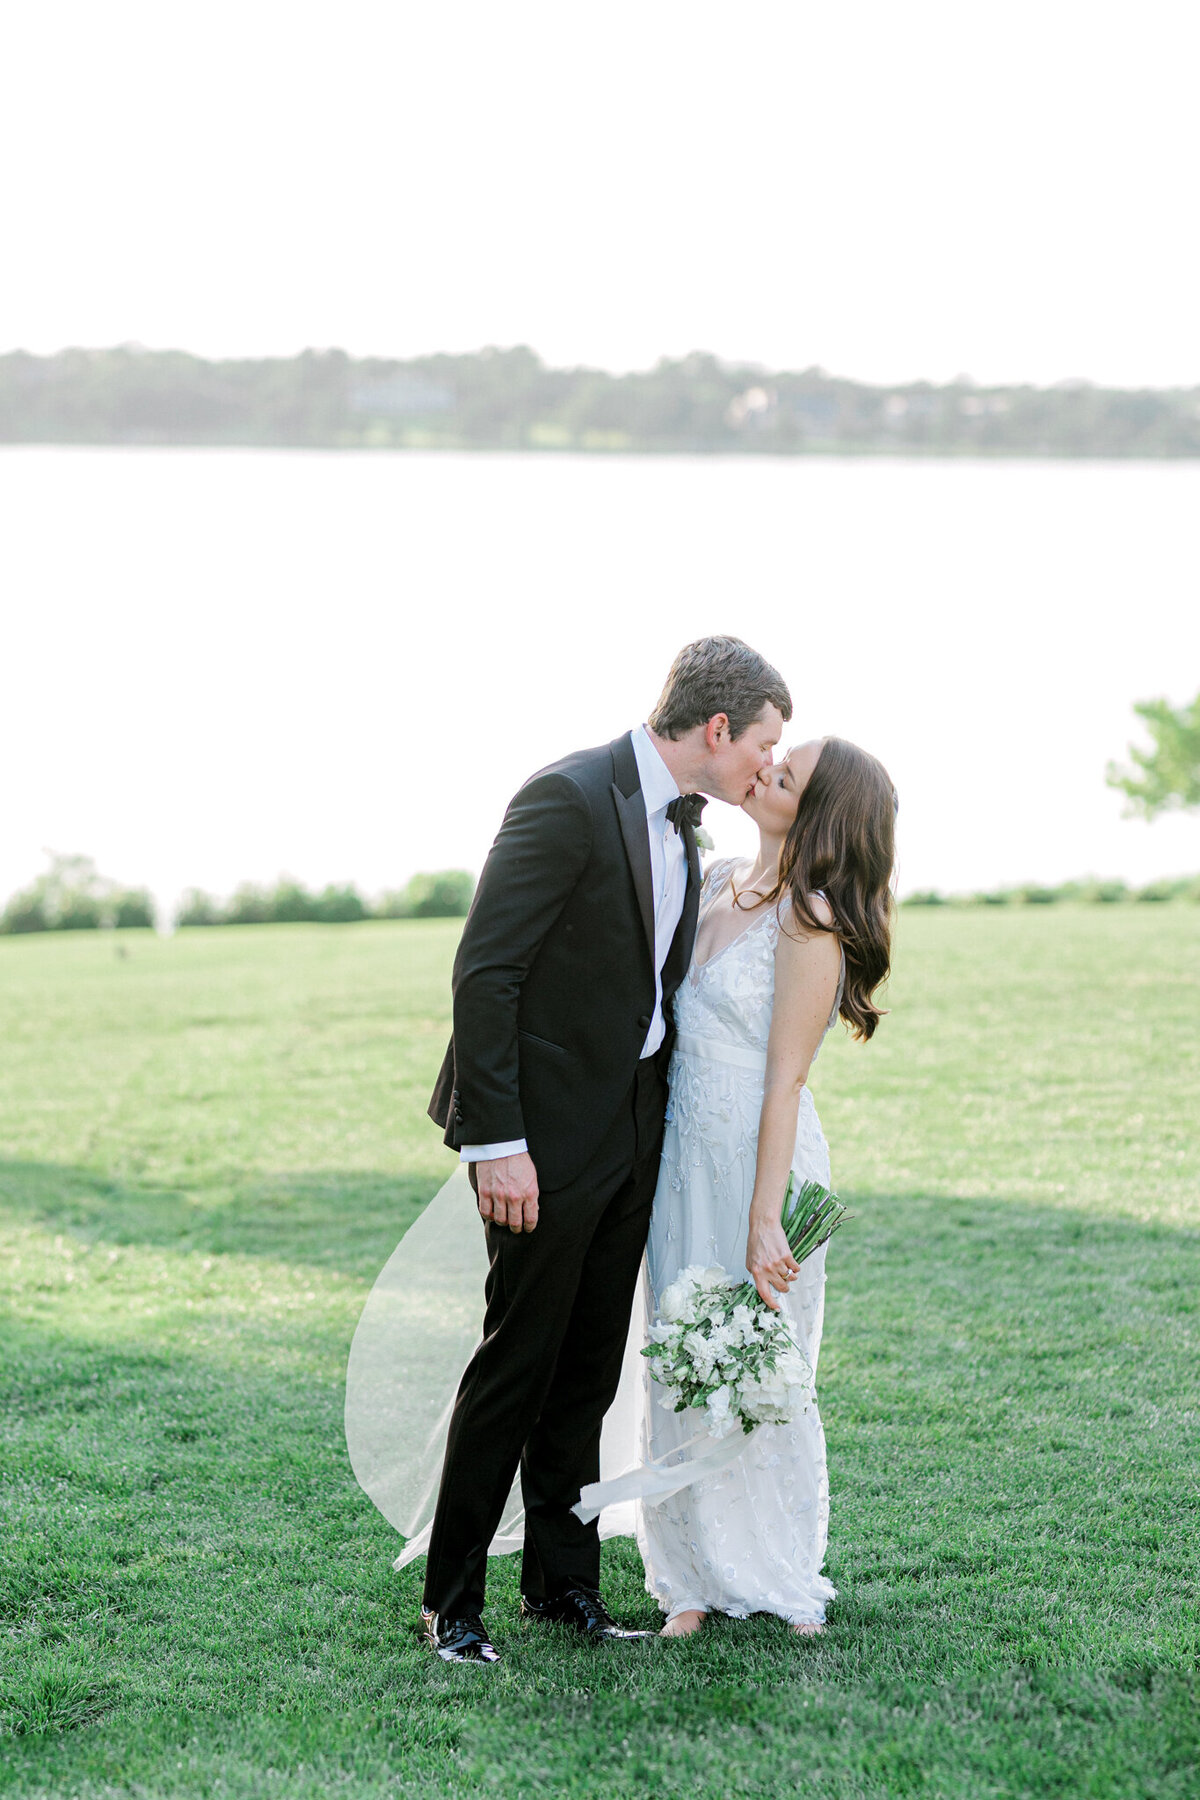 Gena & Matt's Wedding at the Dallas Arboretum | Dallas Wedding Photographer | Sami Kathryn Photography-172